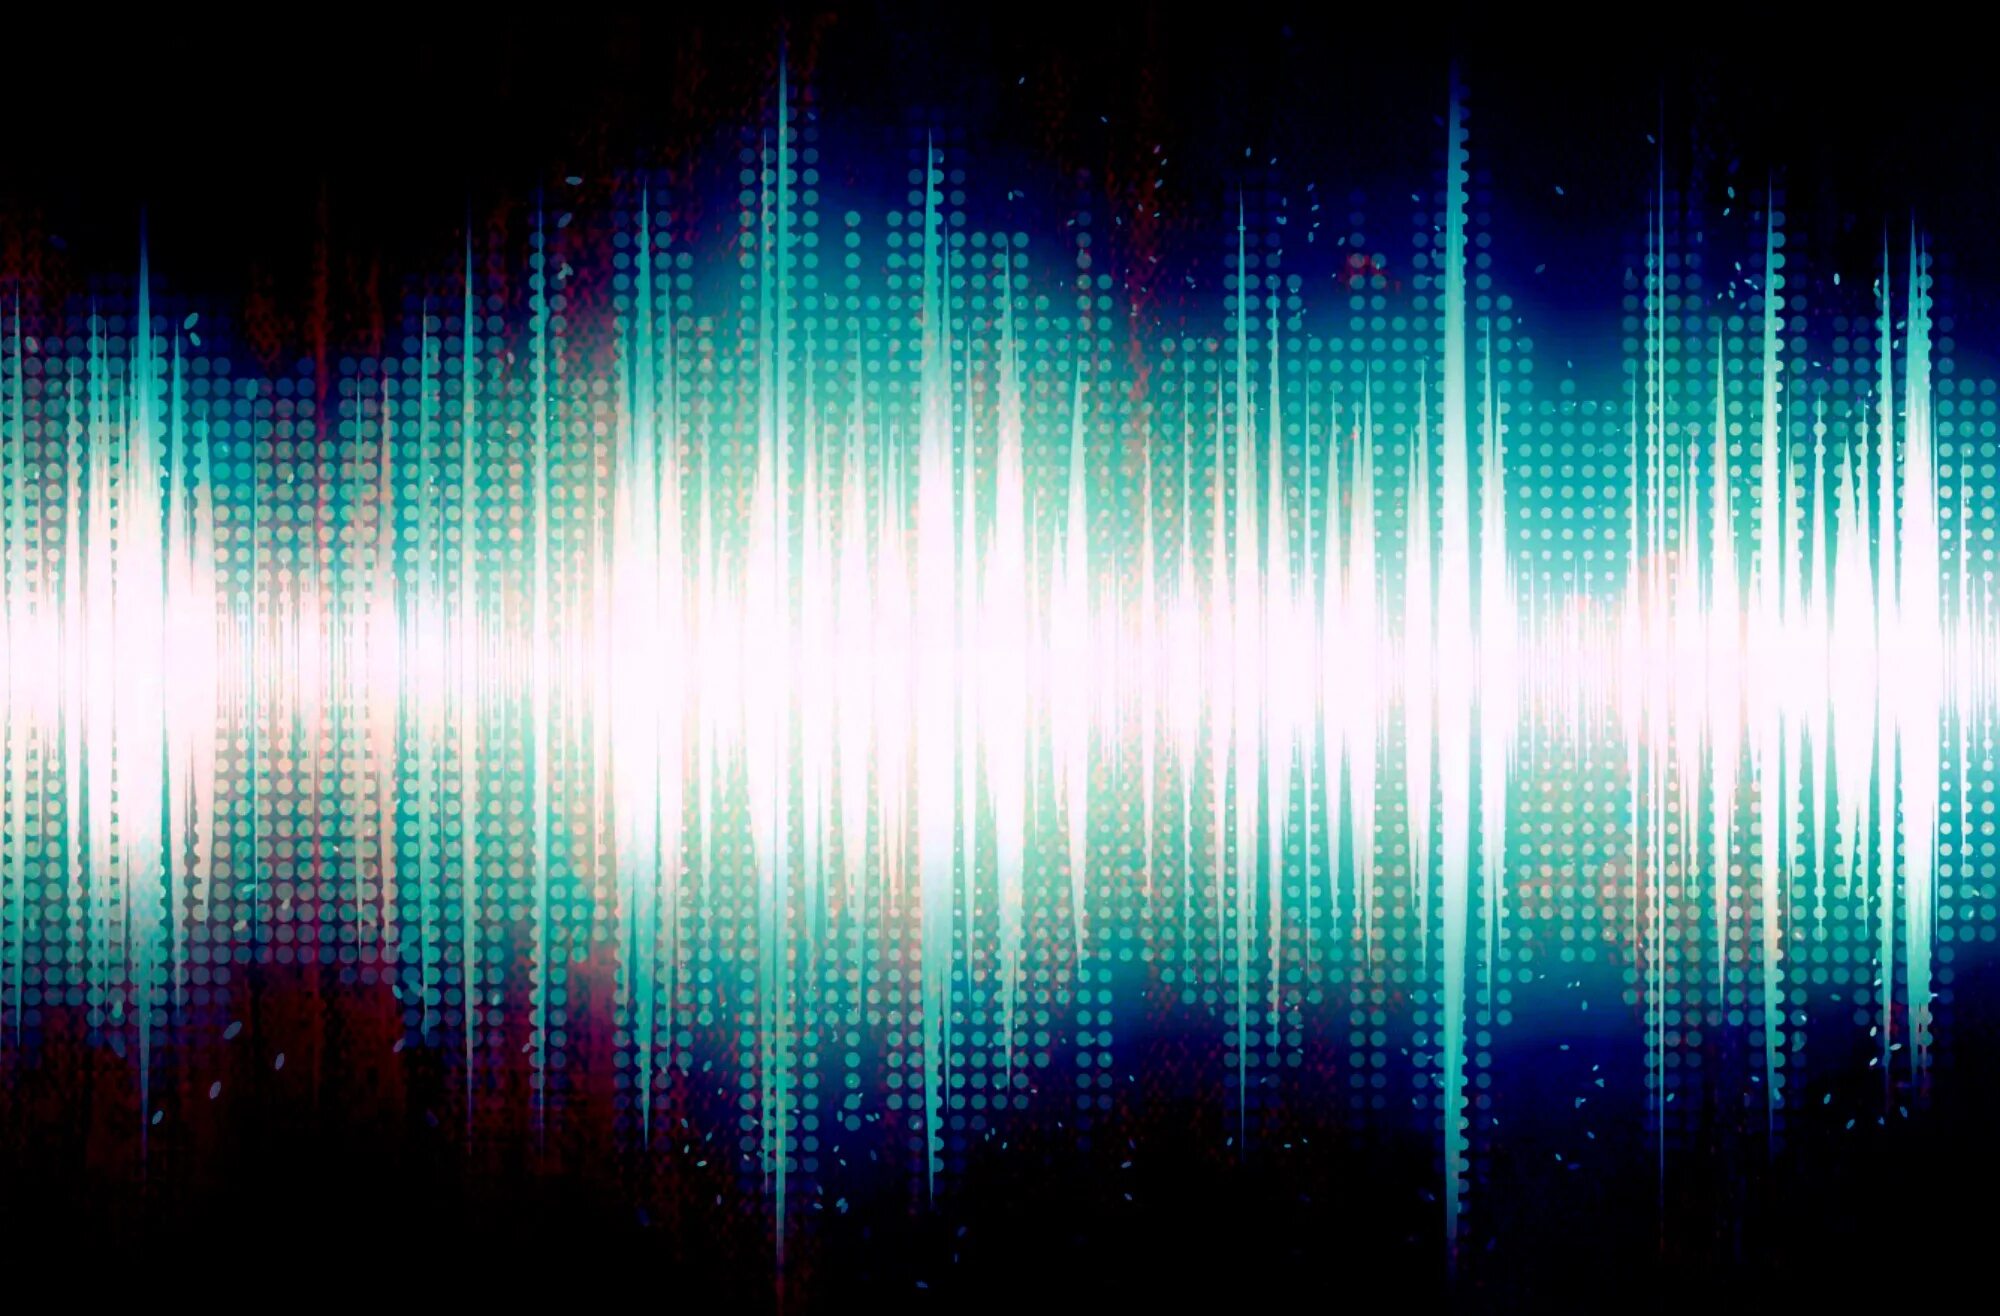 Wave effect. Звуковая волна. Звуковая волна эквалайзер. Визуальный эквалайзер. Визуализация звука.